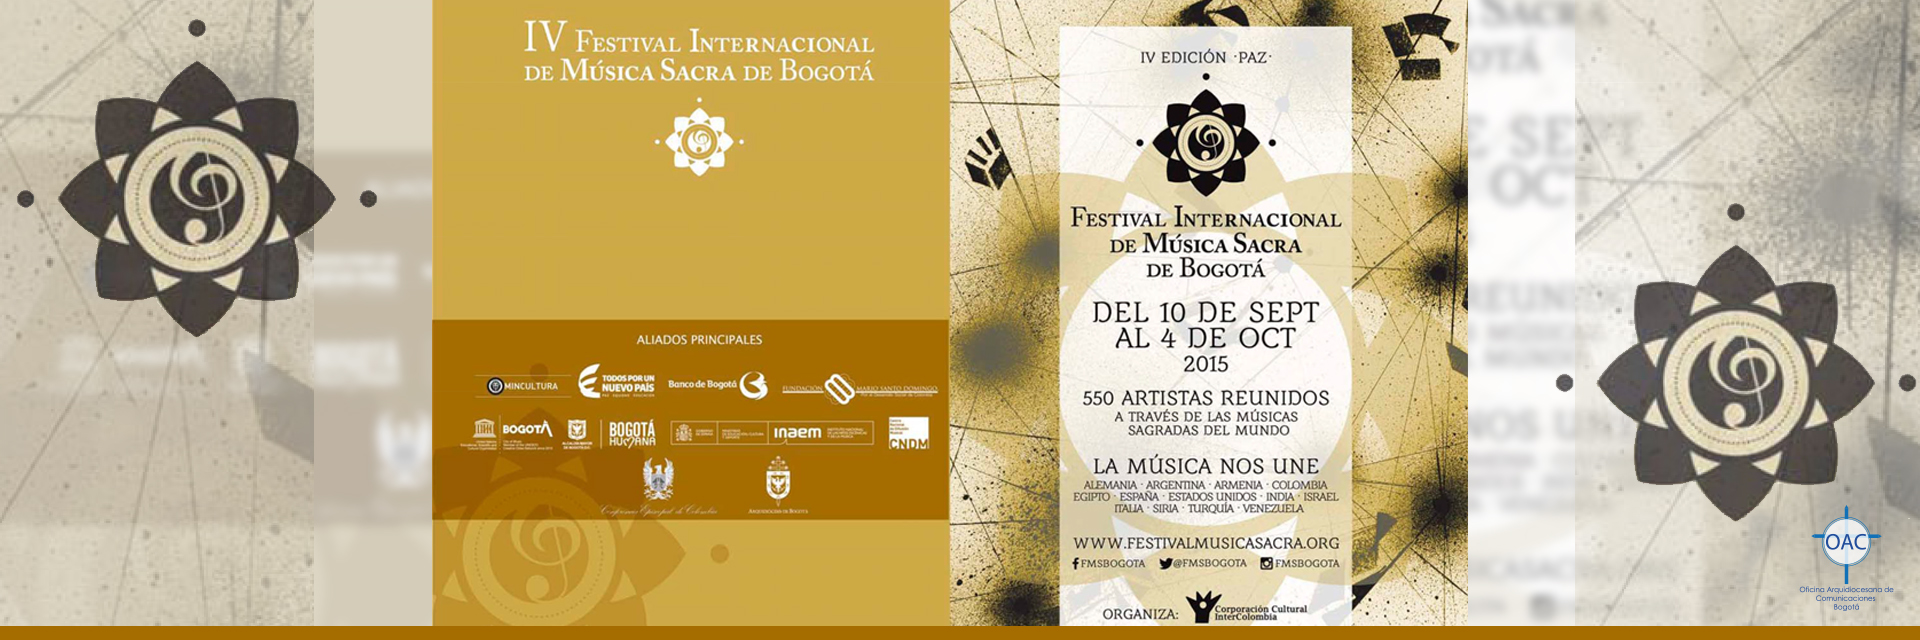 IV Festival Internacional de Música Sacra de Bogotá -PAZ-